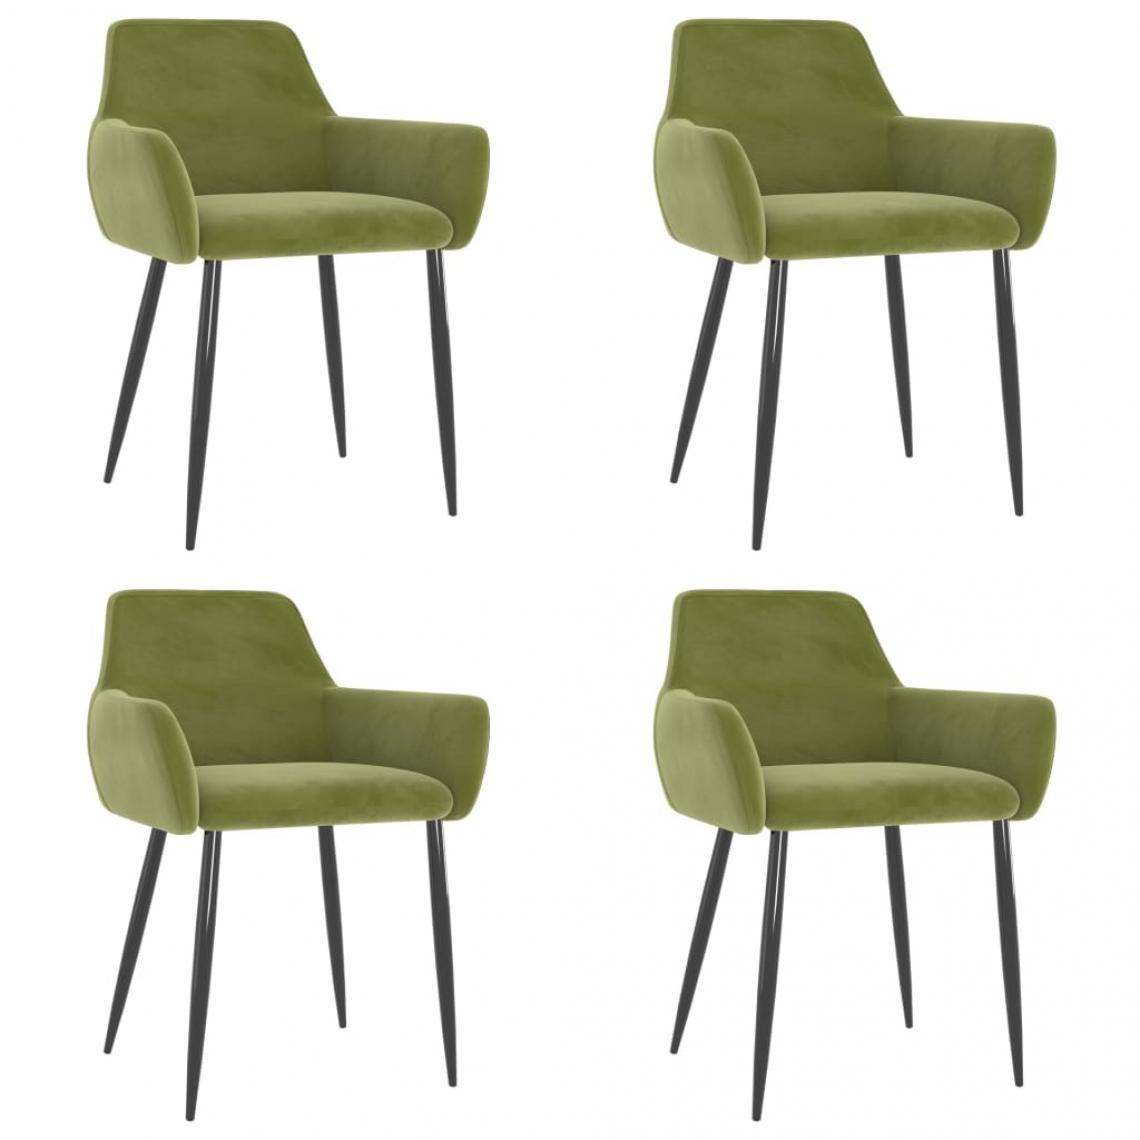 Decoshop26 - Lot de 4 chaises de salle à manger cuisine design moderne velours vert clair CDS022019 - Chaises